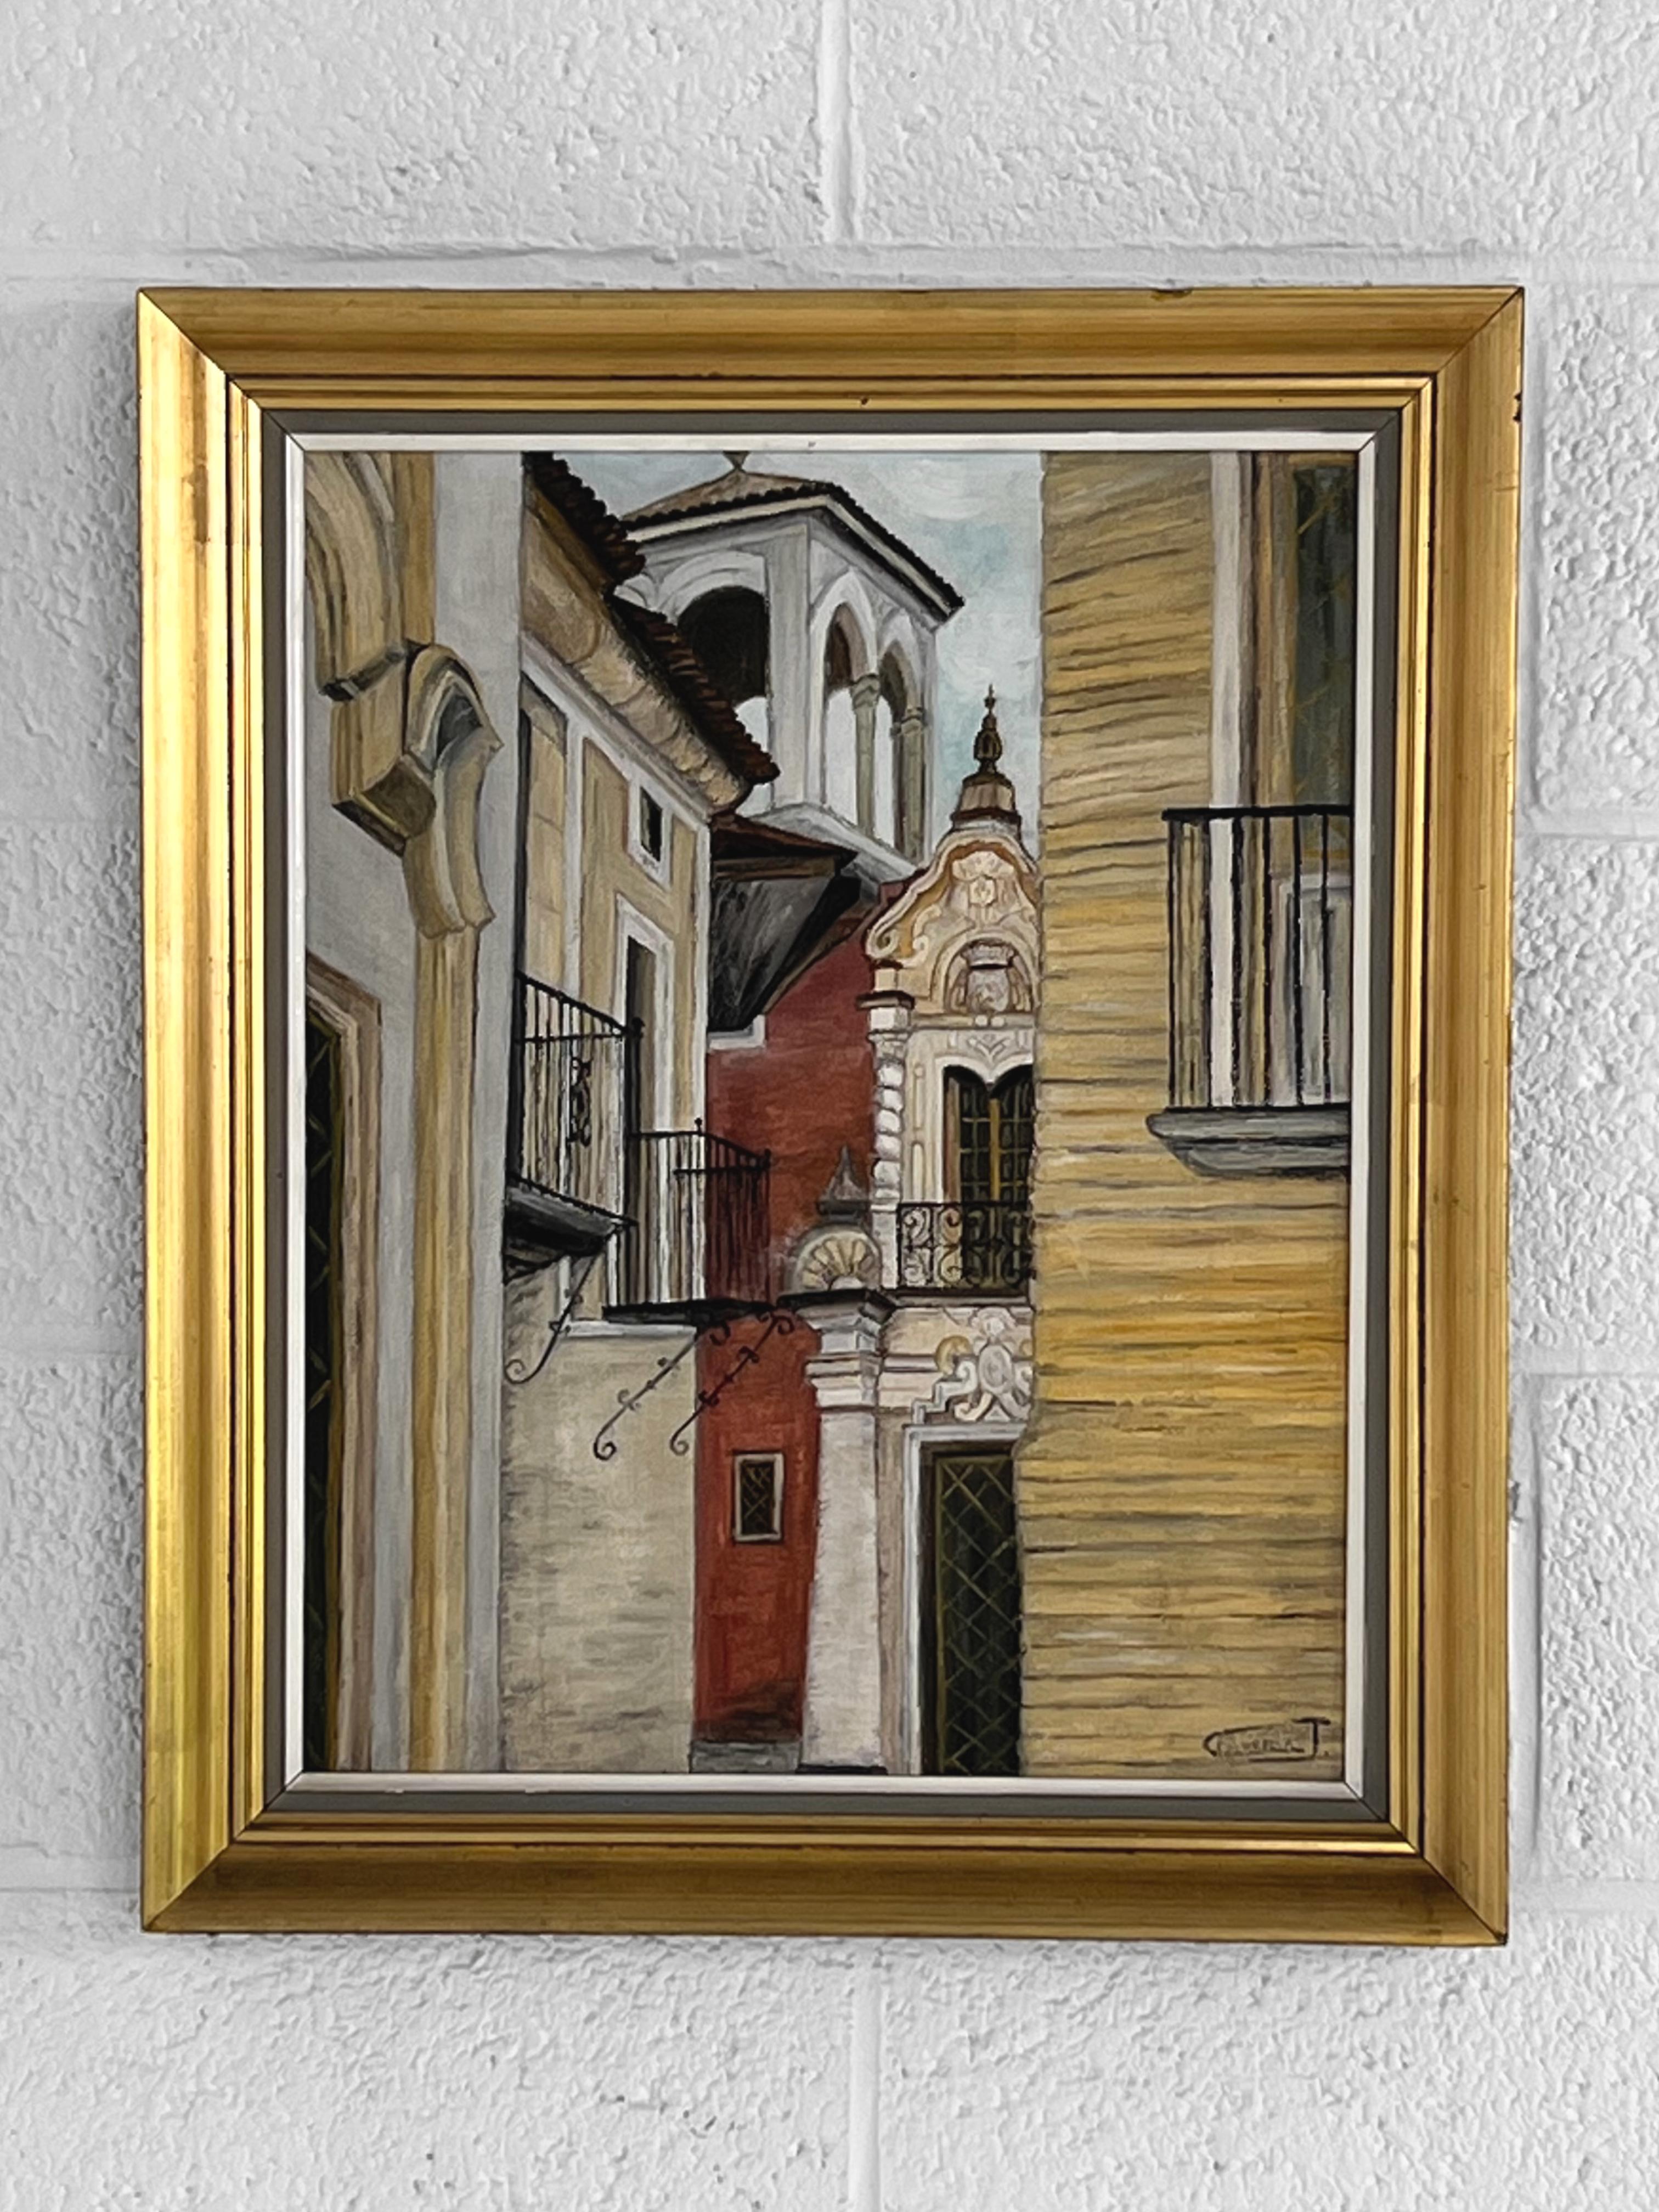 Peinture à l'huile impressionniste Architecture d'une ville montrant un gros plan d'une ville, en particulier les fenêtres, les balcons et le clocher. Structure en bois laqué noir et doré.